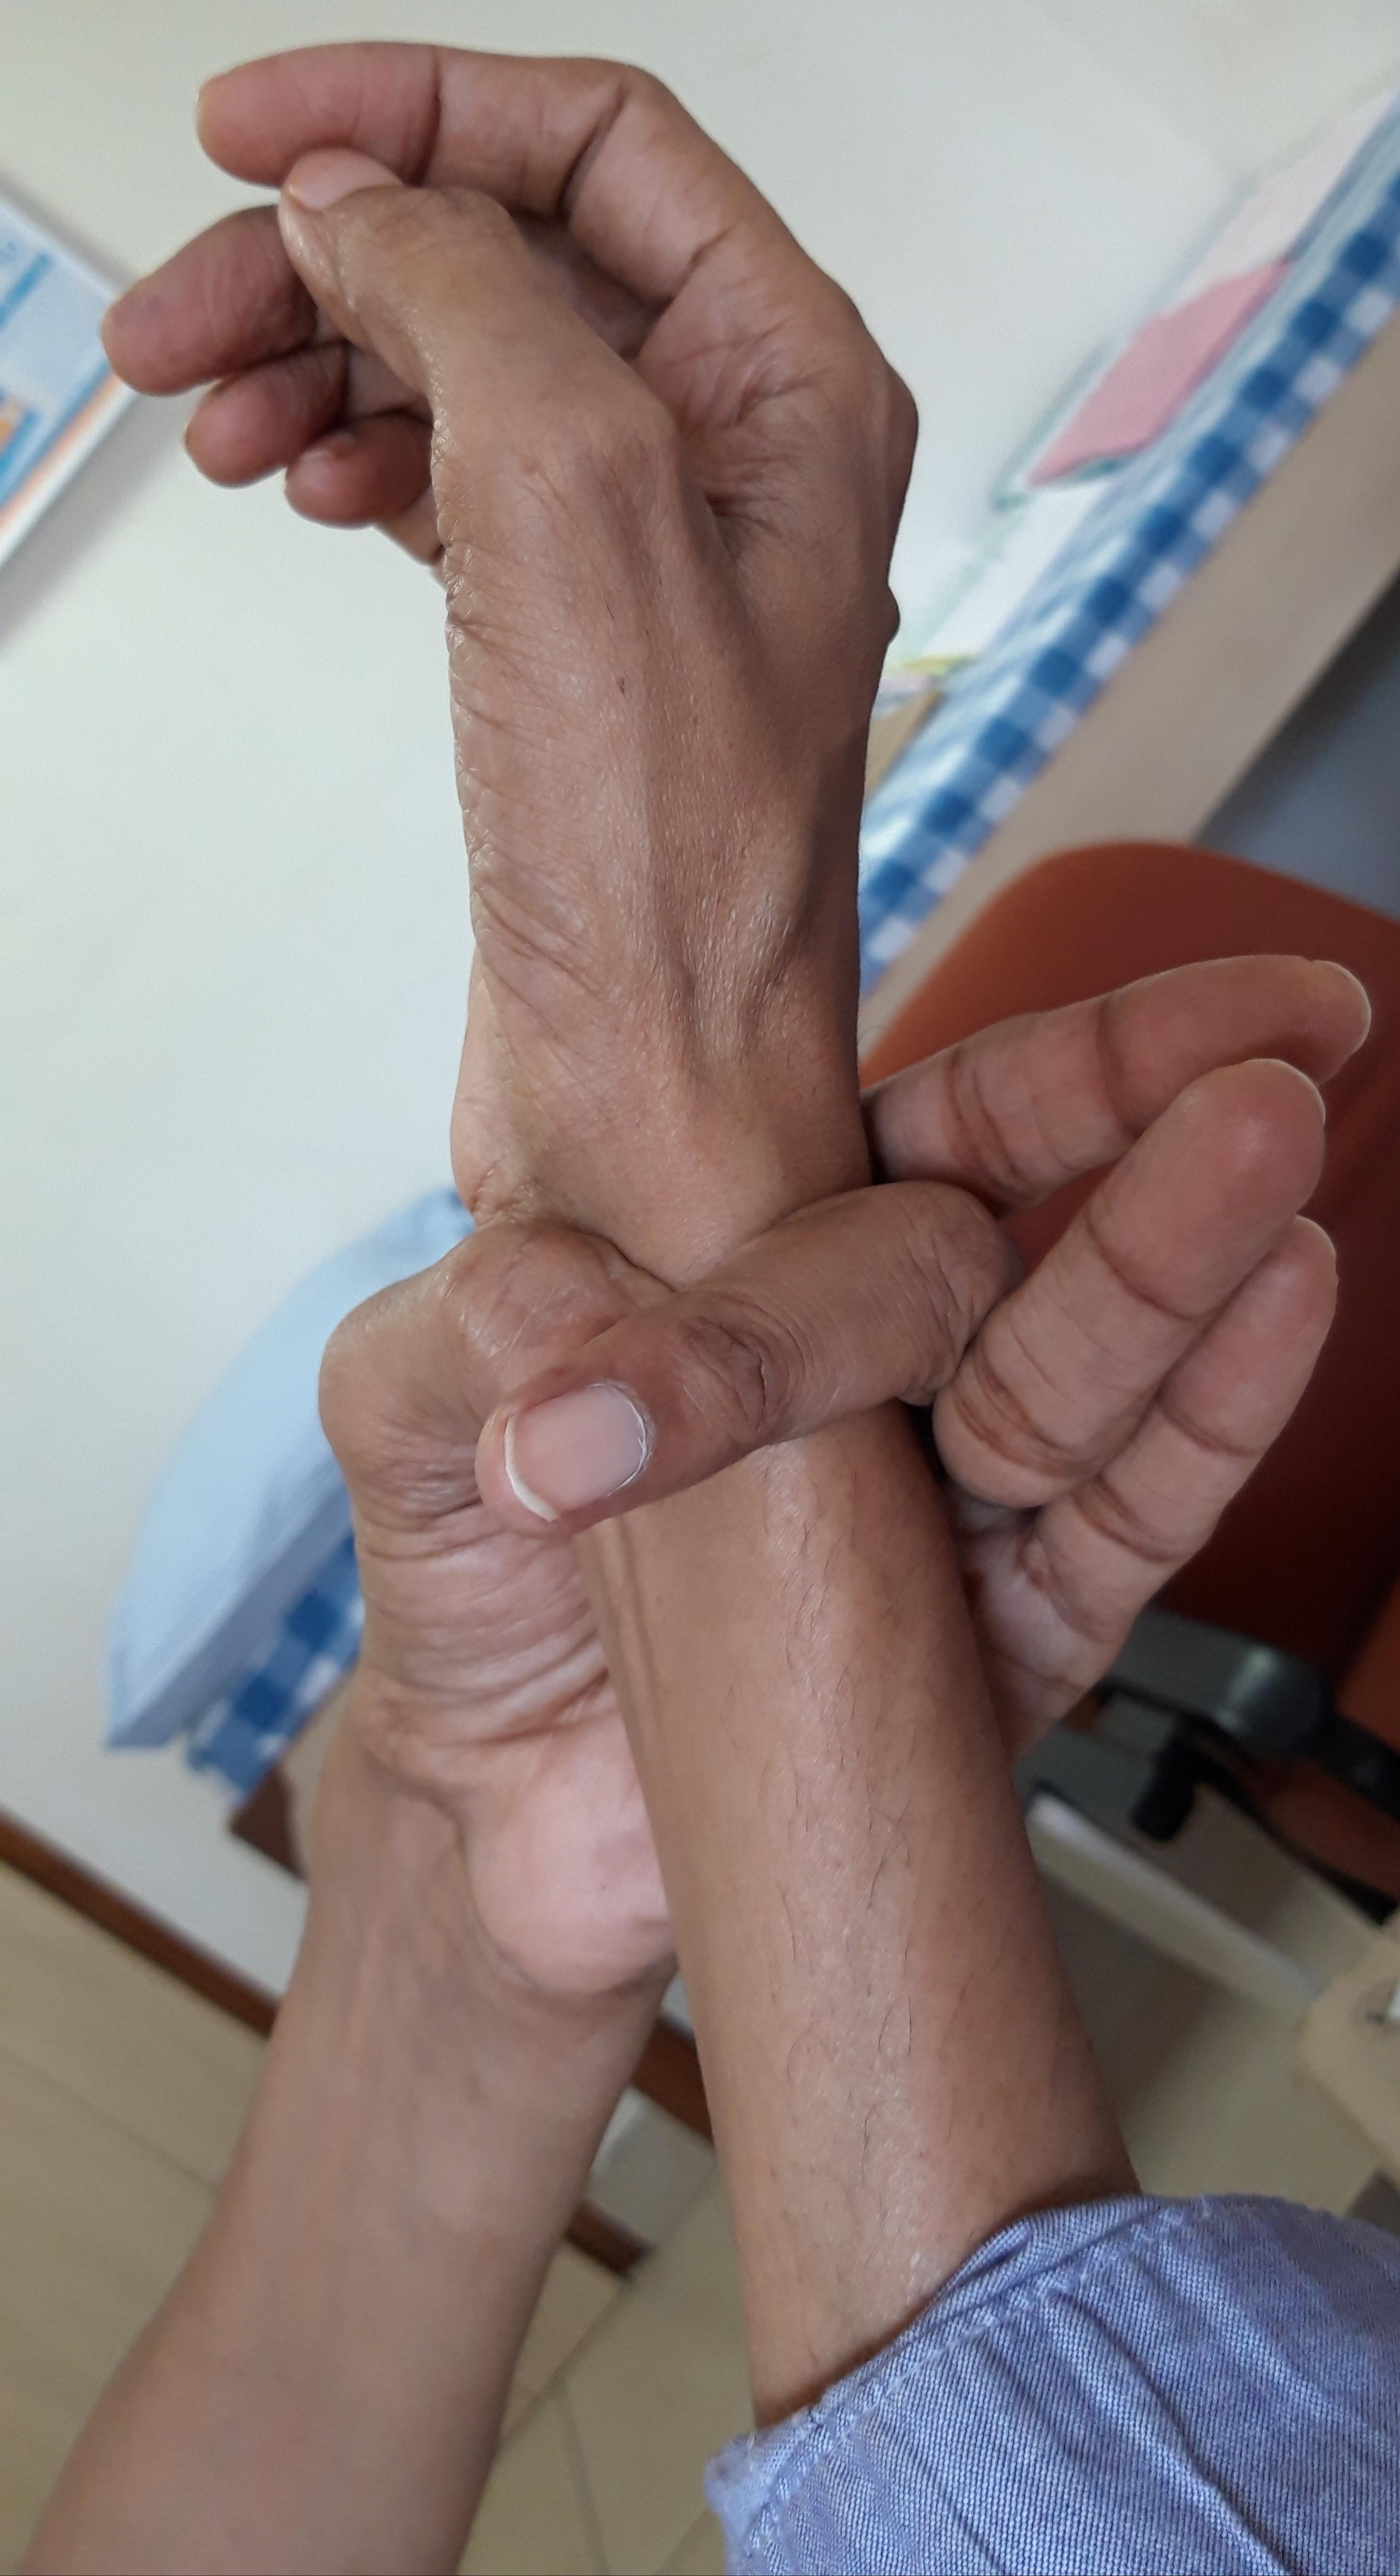 Algunas características comunes asociadas con el síndrome incluyen una contextura alta y delgada, con los dedos de manos y pies desproporcionadamente largos y delgados. 